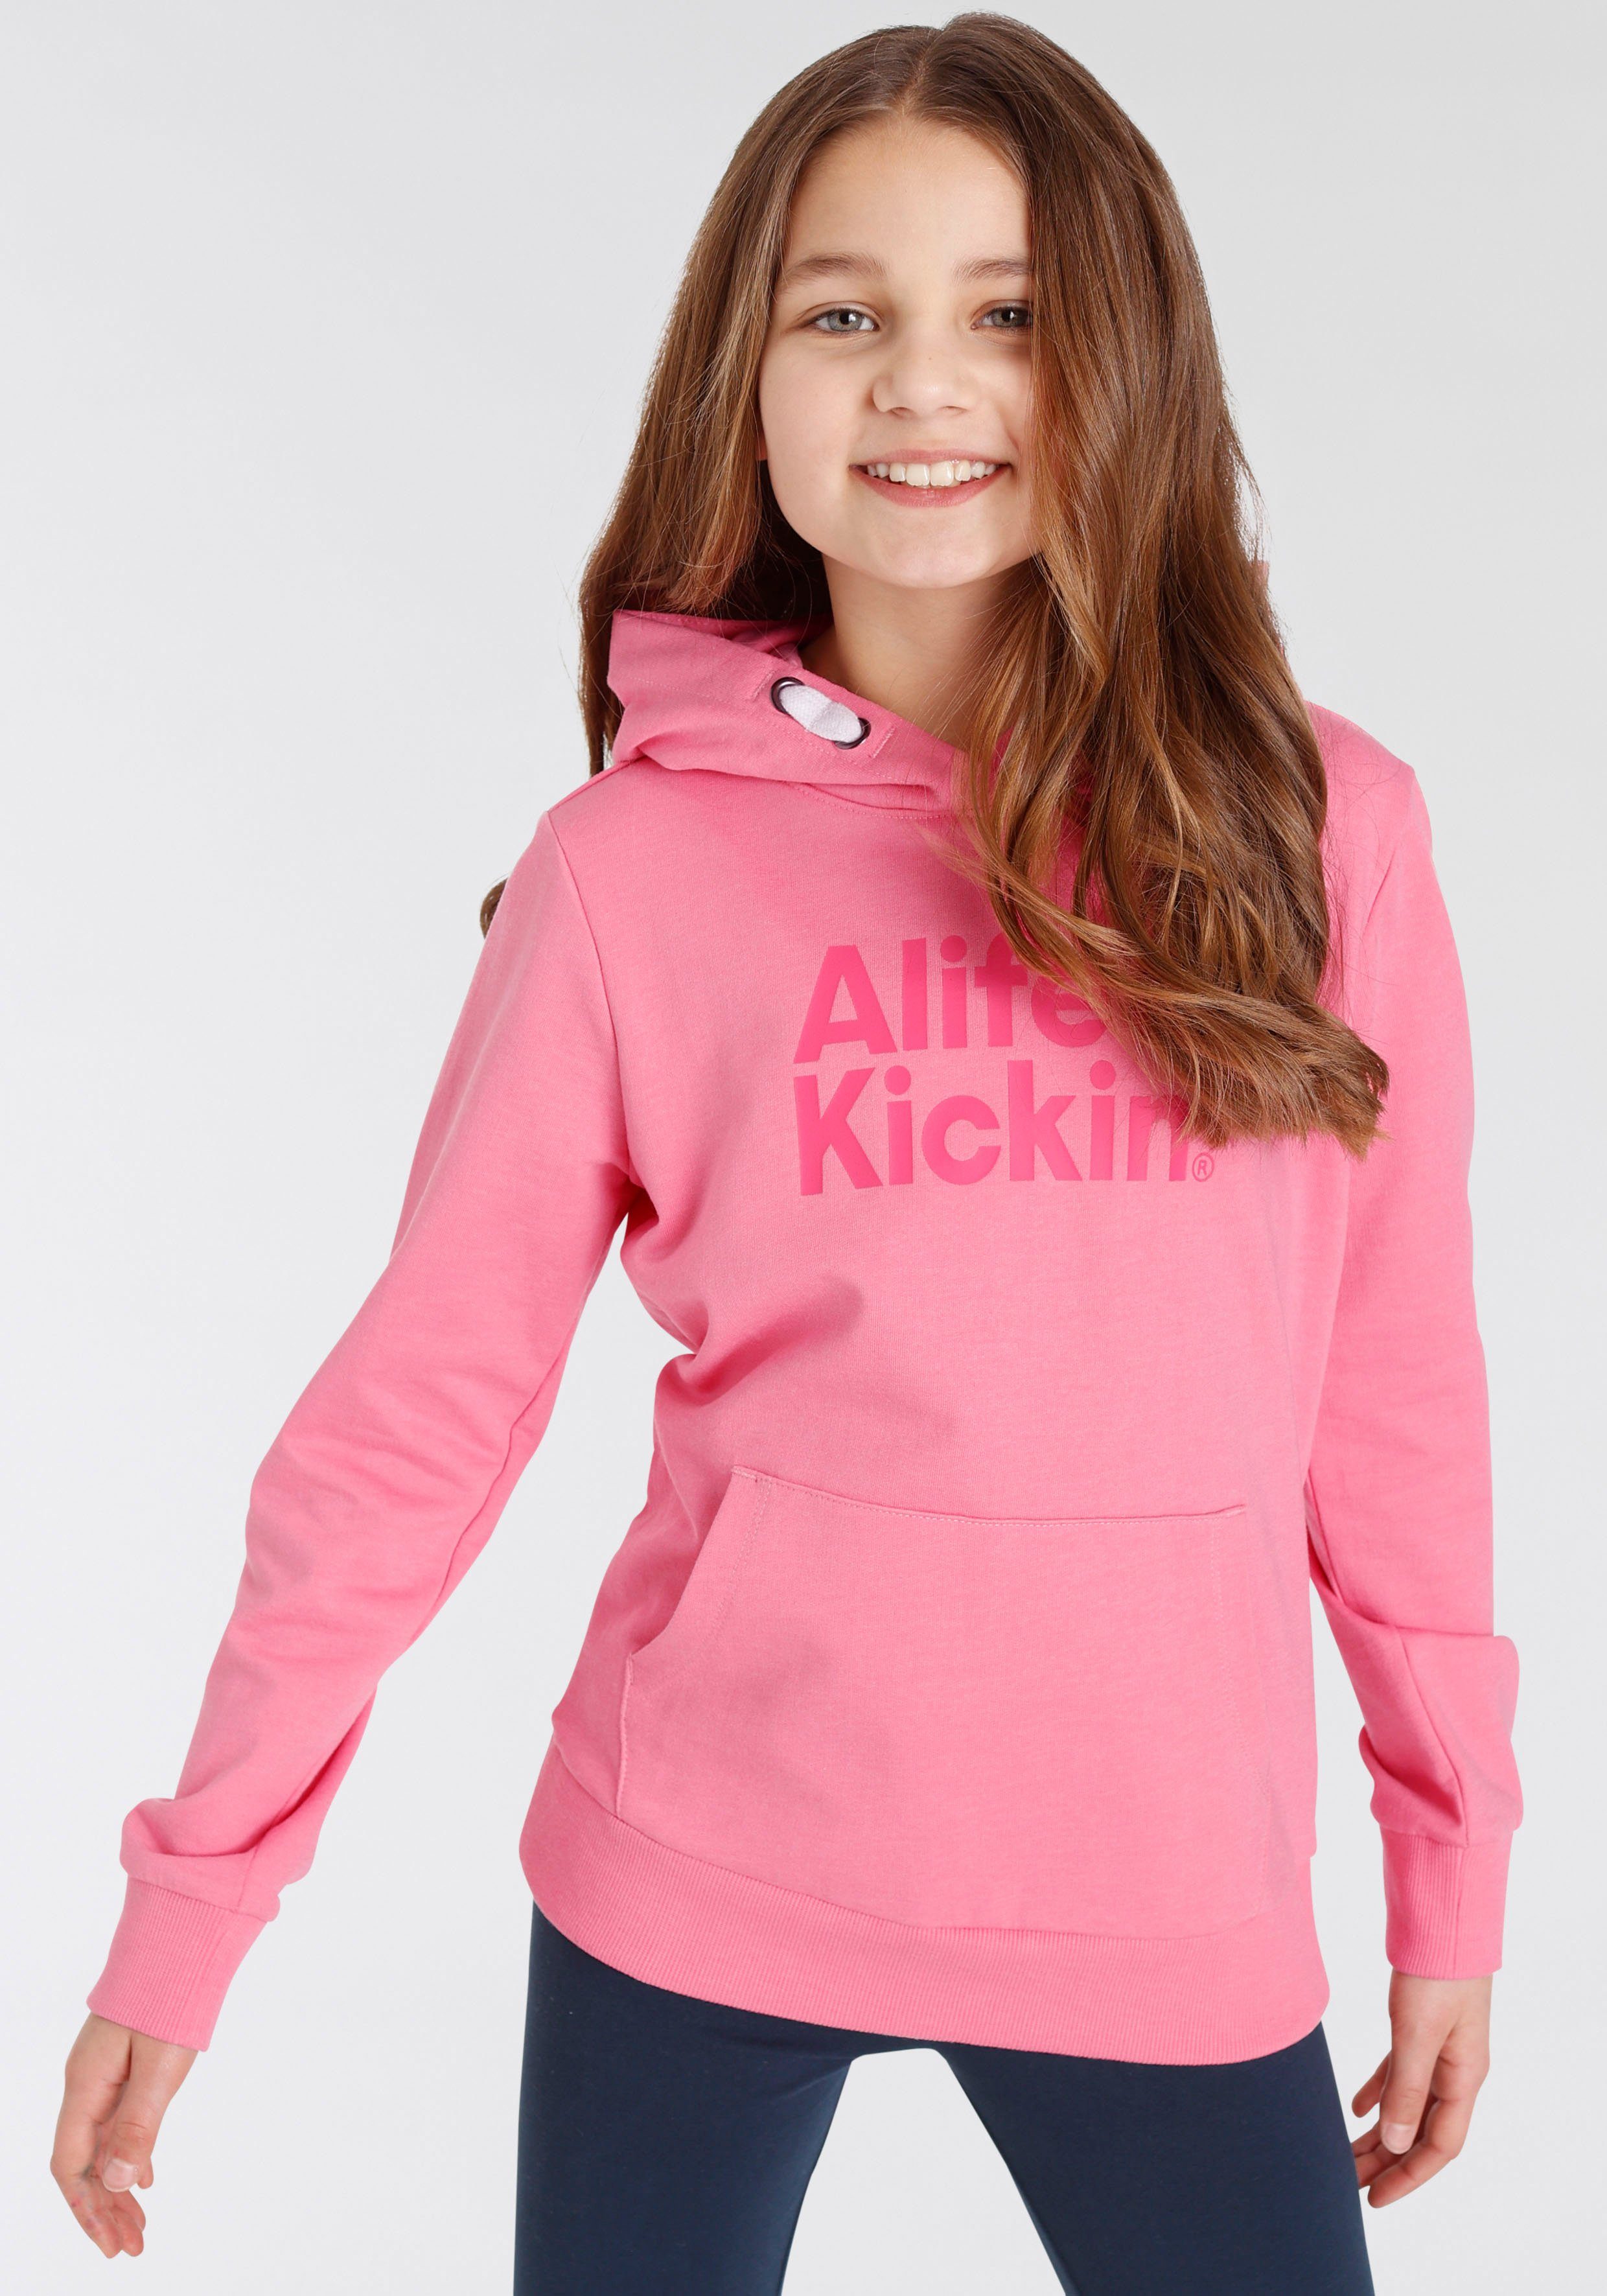 Alife mit Kapuzensweatshirt Alife NEUE & Logo Kickin Druck Kickin MARKE! & für